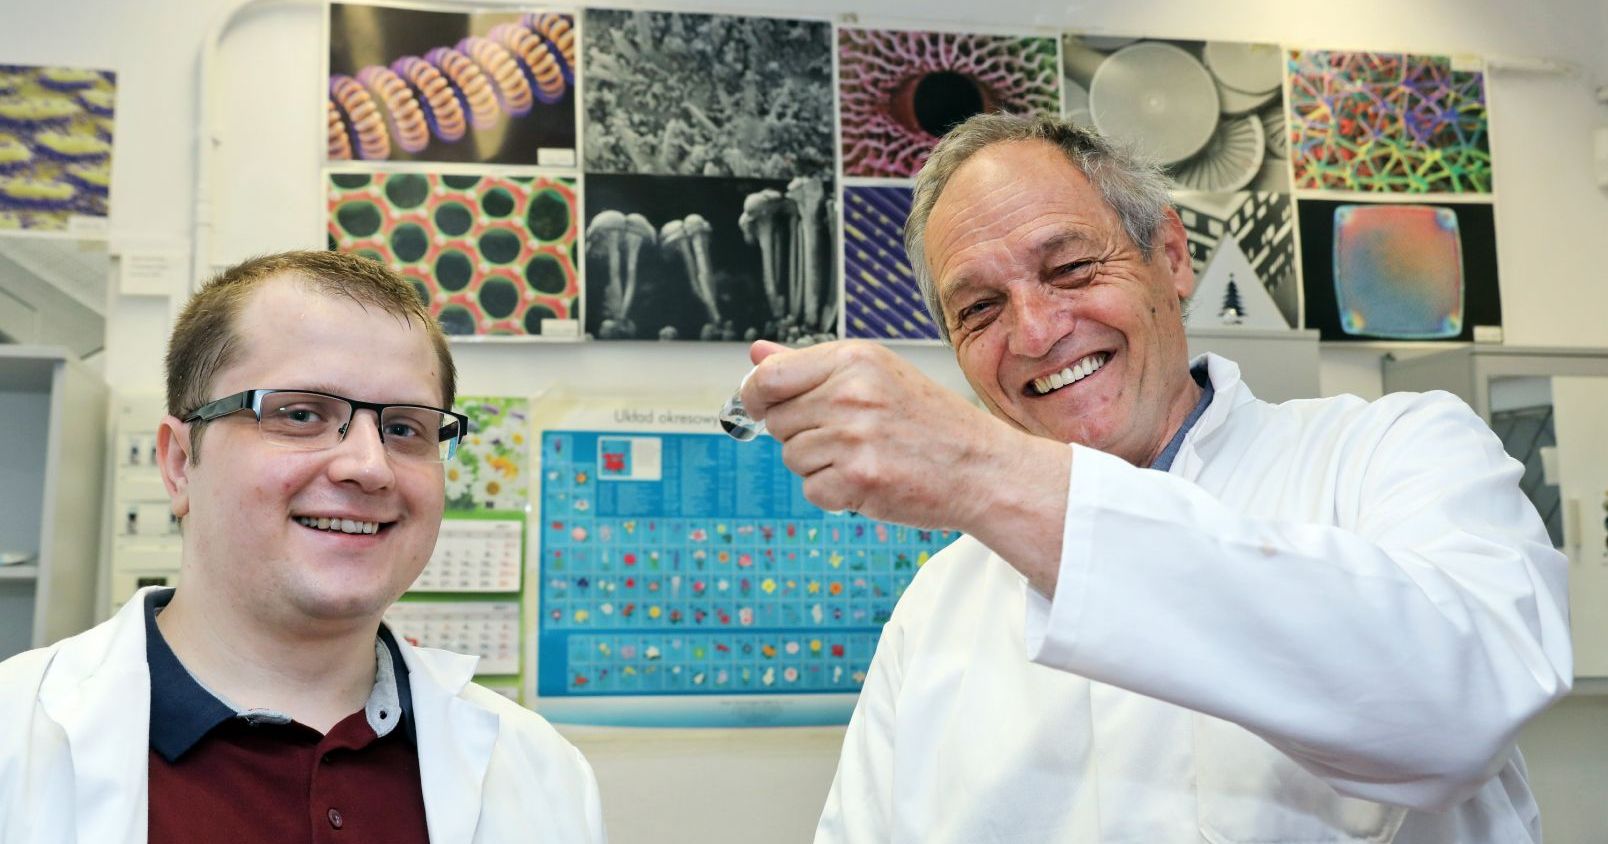 Zdjęcie przedstawia dwóch uśmiechniętych mężczyzn. Mężczyzna po lewej stronie ma okulary. W tle wiszą zdjęcia różnych substancji widzianych przez mikroskop.